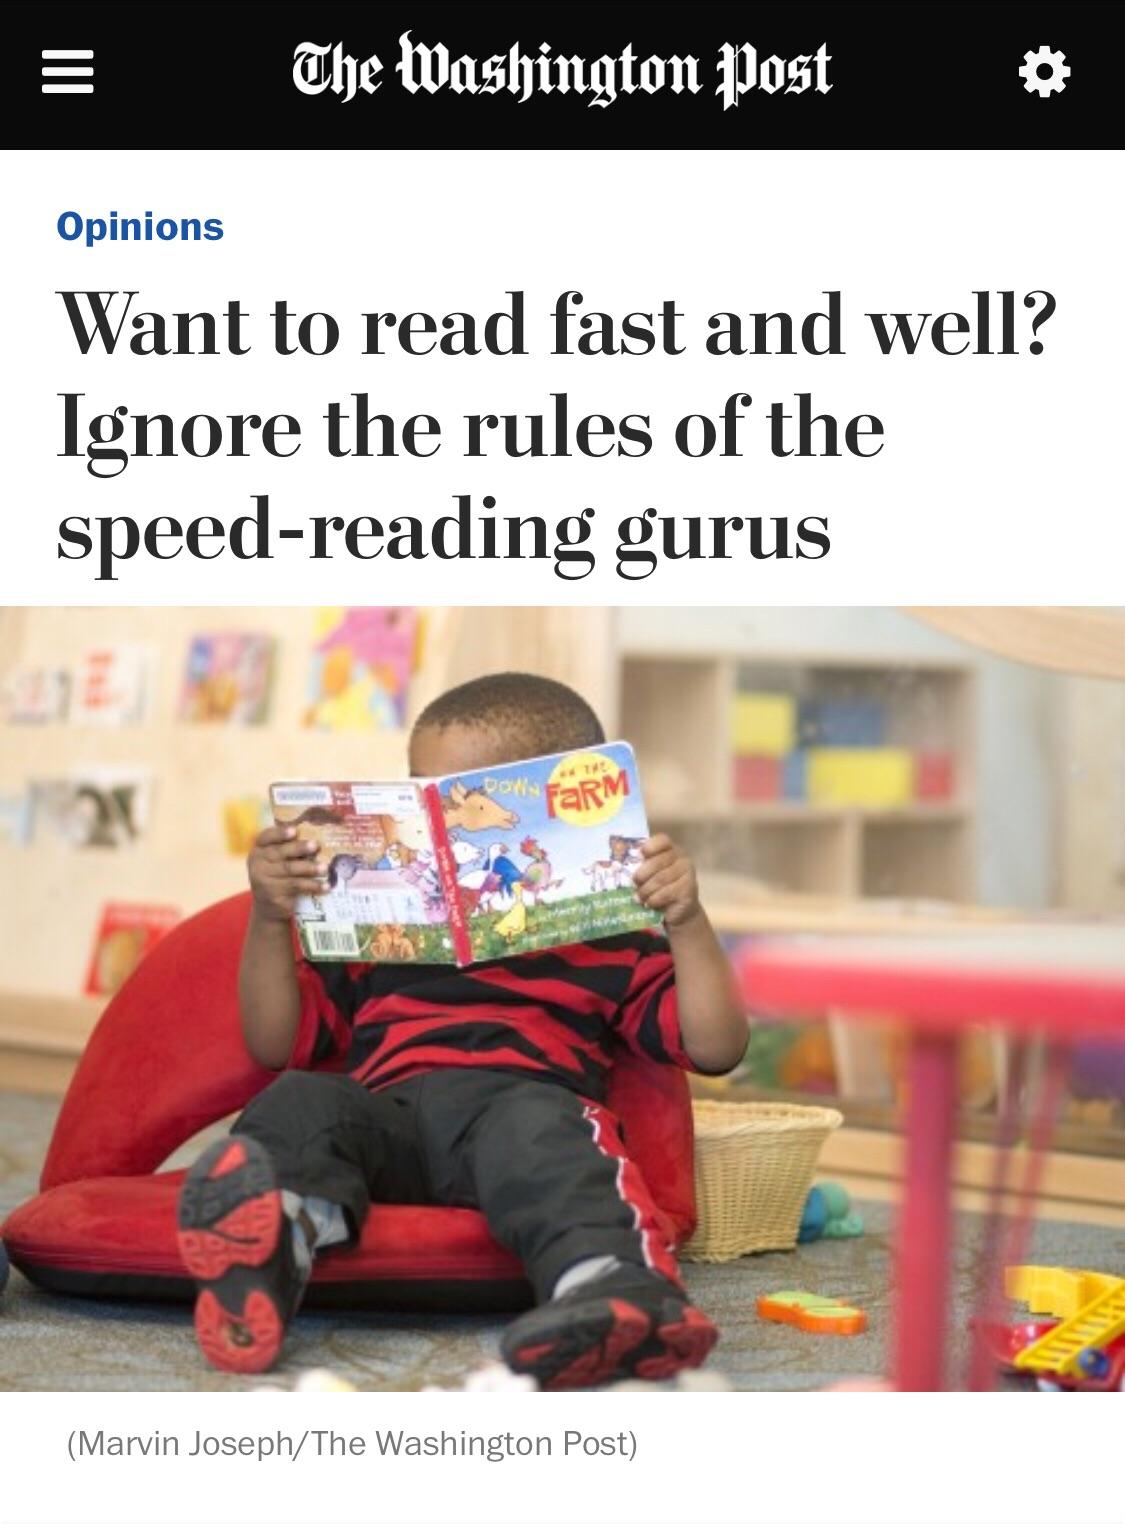 如何提高英文阅读速度? - Azure 的回答 - 知乎